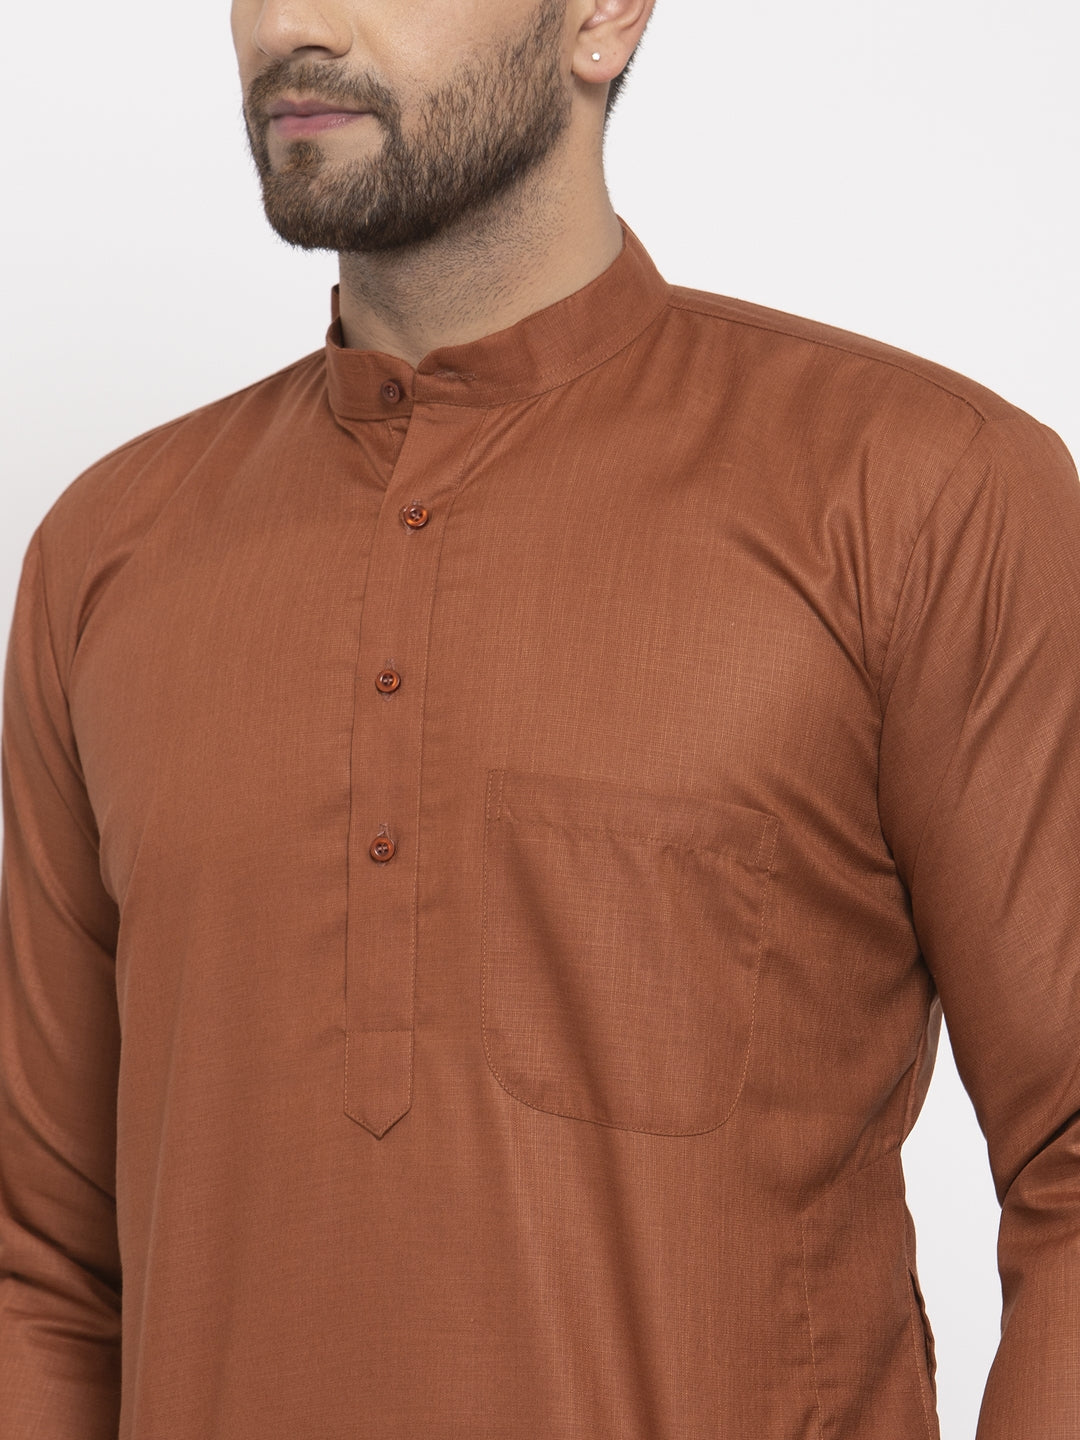 Men's Brown Cotton Solid Kurta Only ( KO 611 Brown ) - Virat Fashions